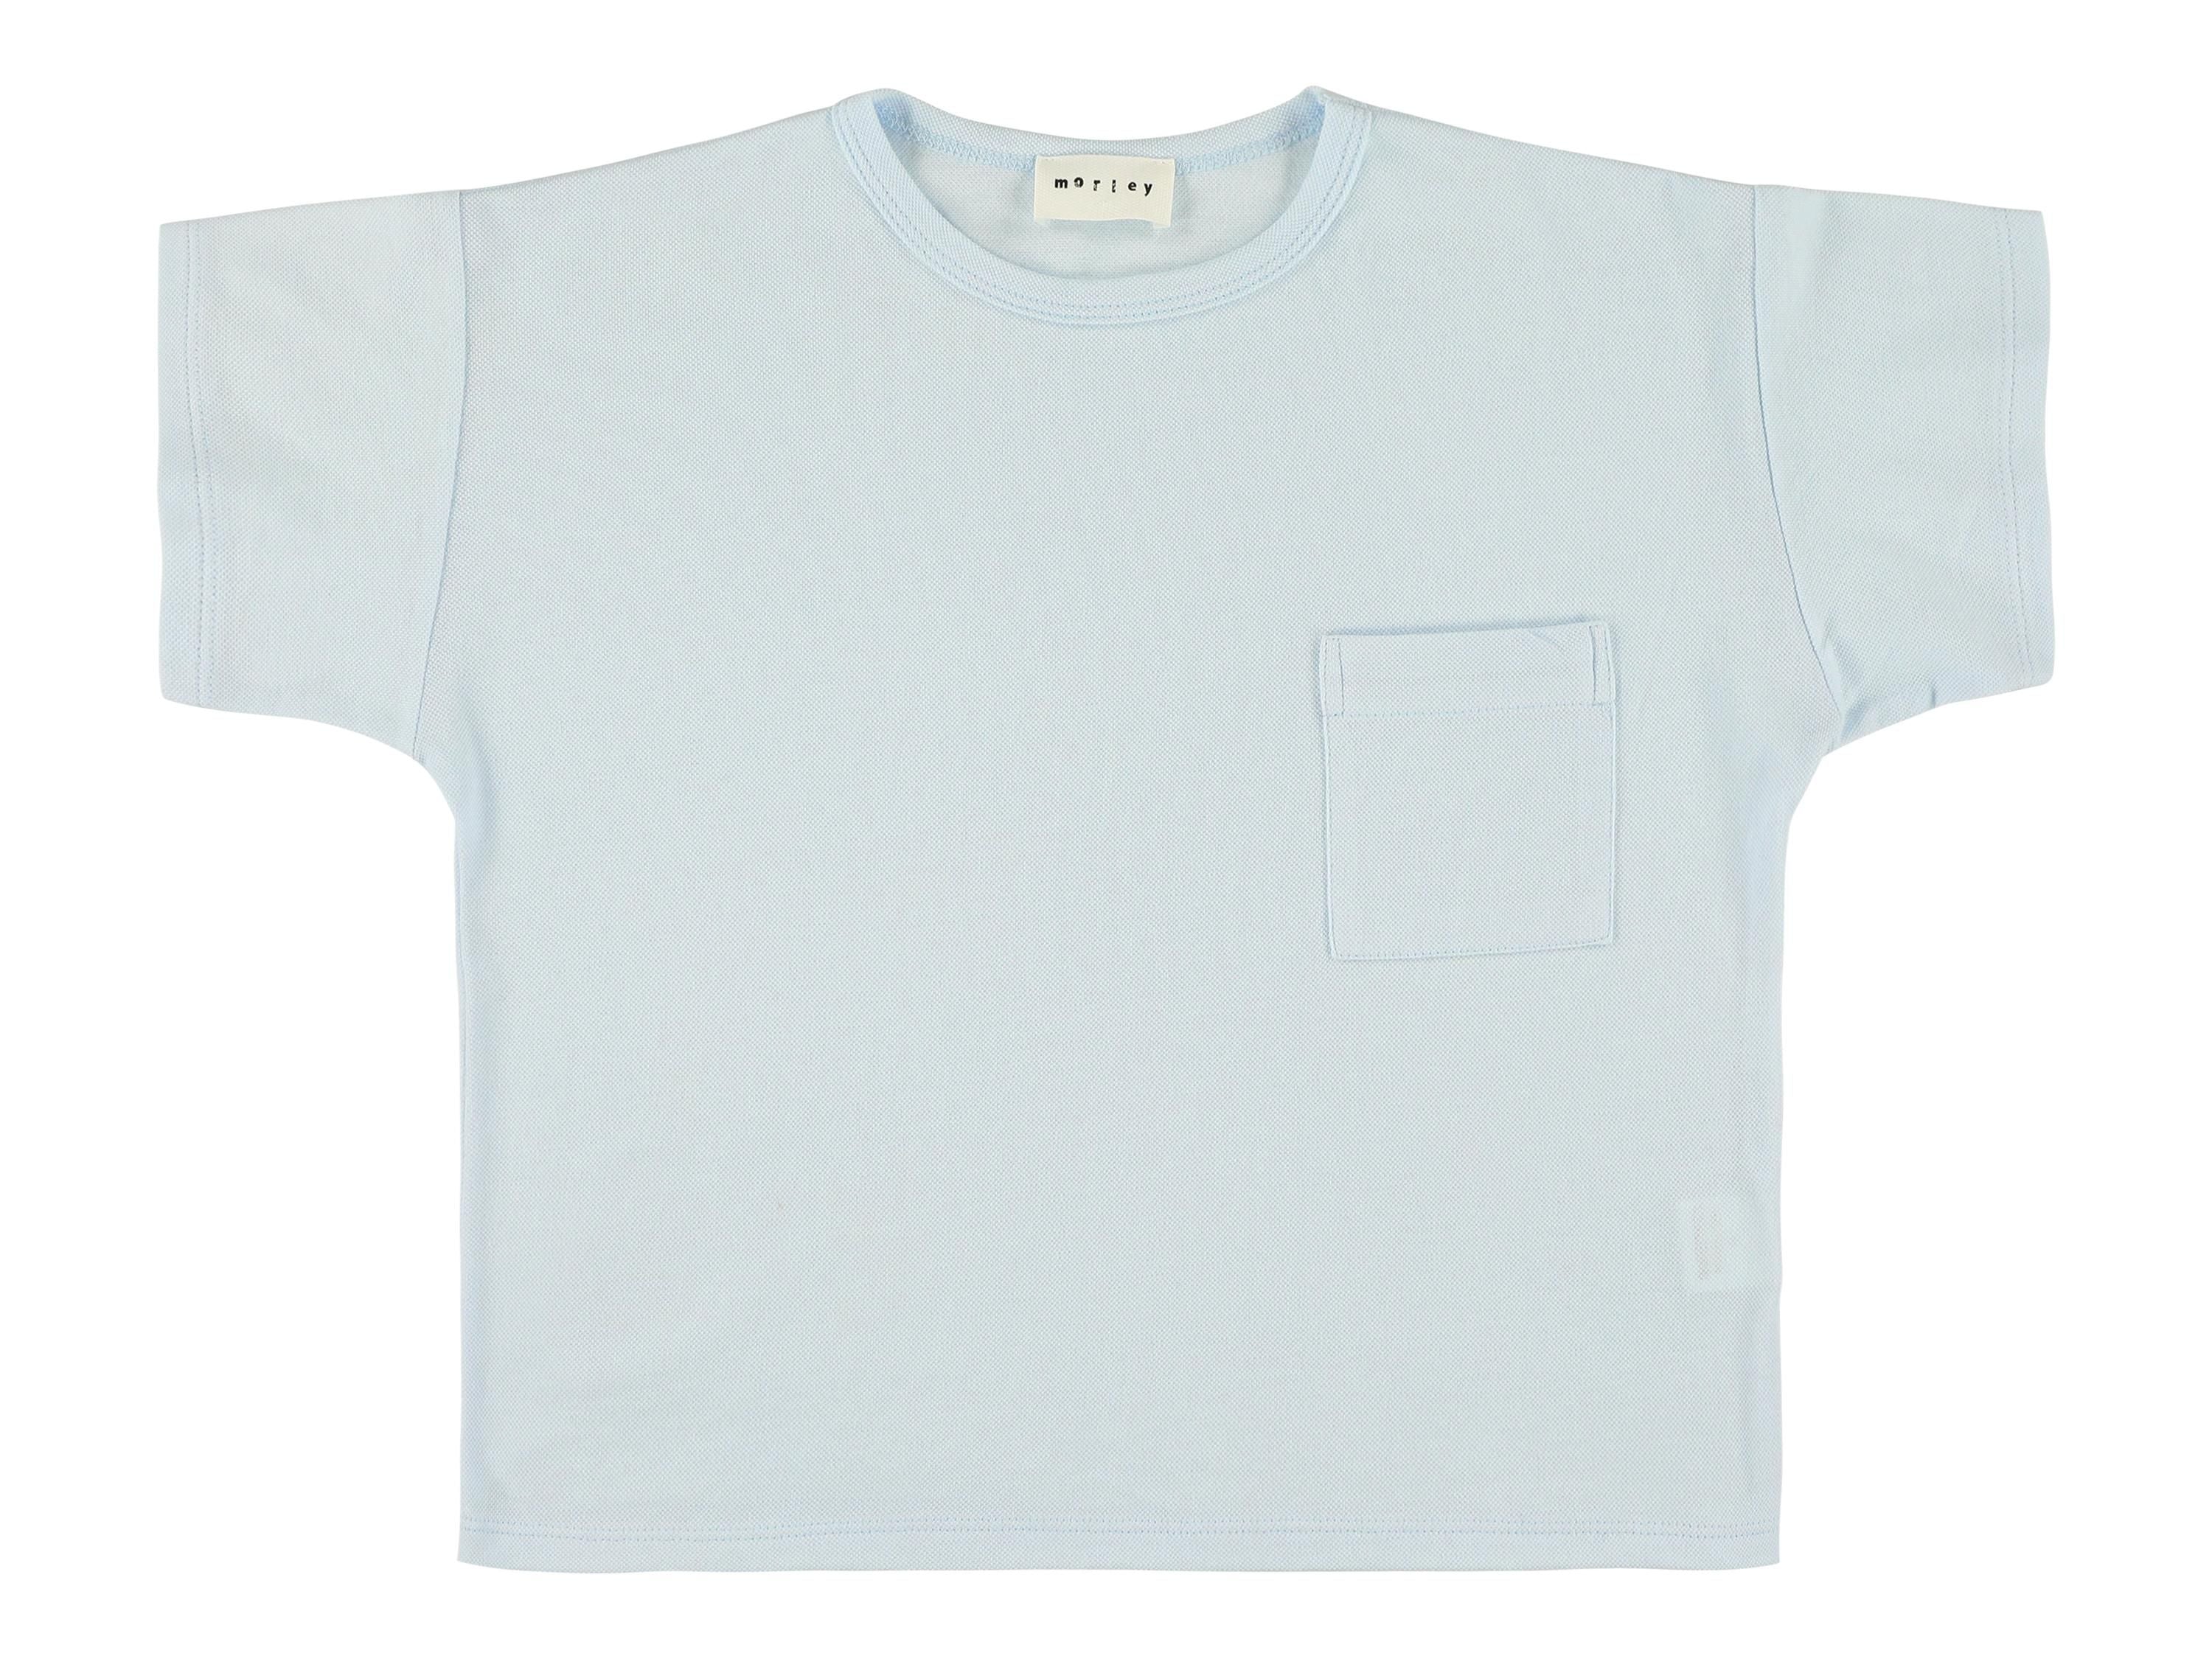 Ushi T-Shirt with Pocket